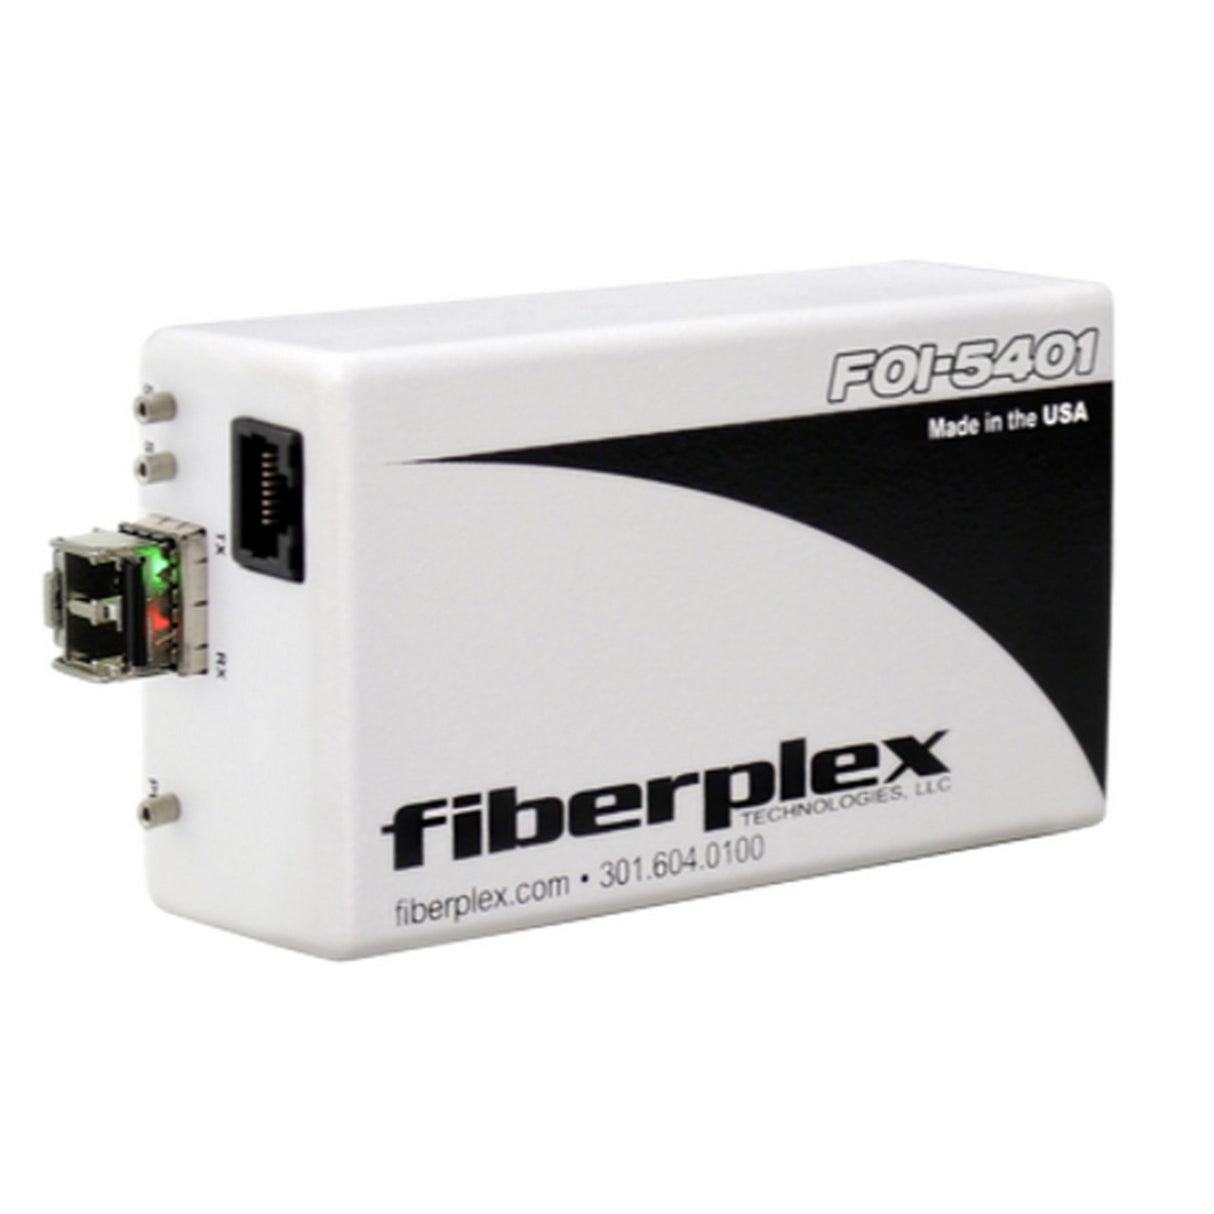 fiberplex FOI-5401-T5B | Isolator for T1 DS-1 or ISDN PRI Interface